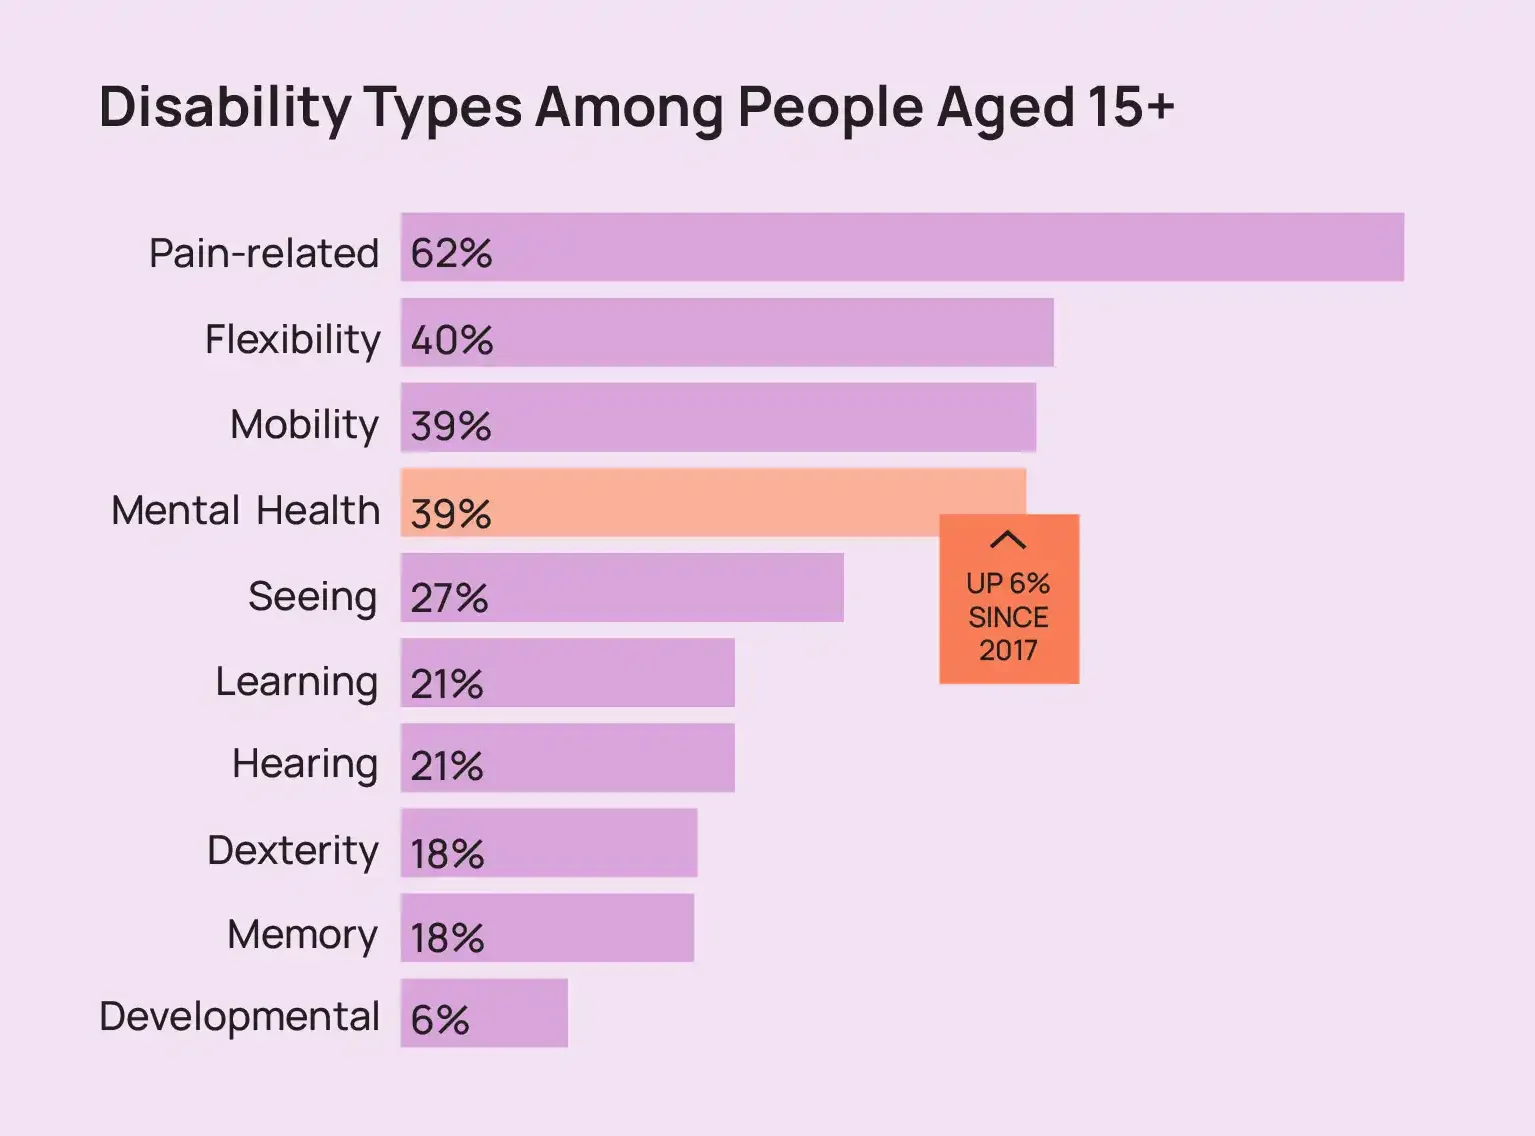 رسم بياني يوضح أنواع الإعاقة لدى الأشخاص بعمر 15 سنة فما فوق.